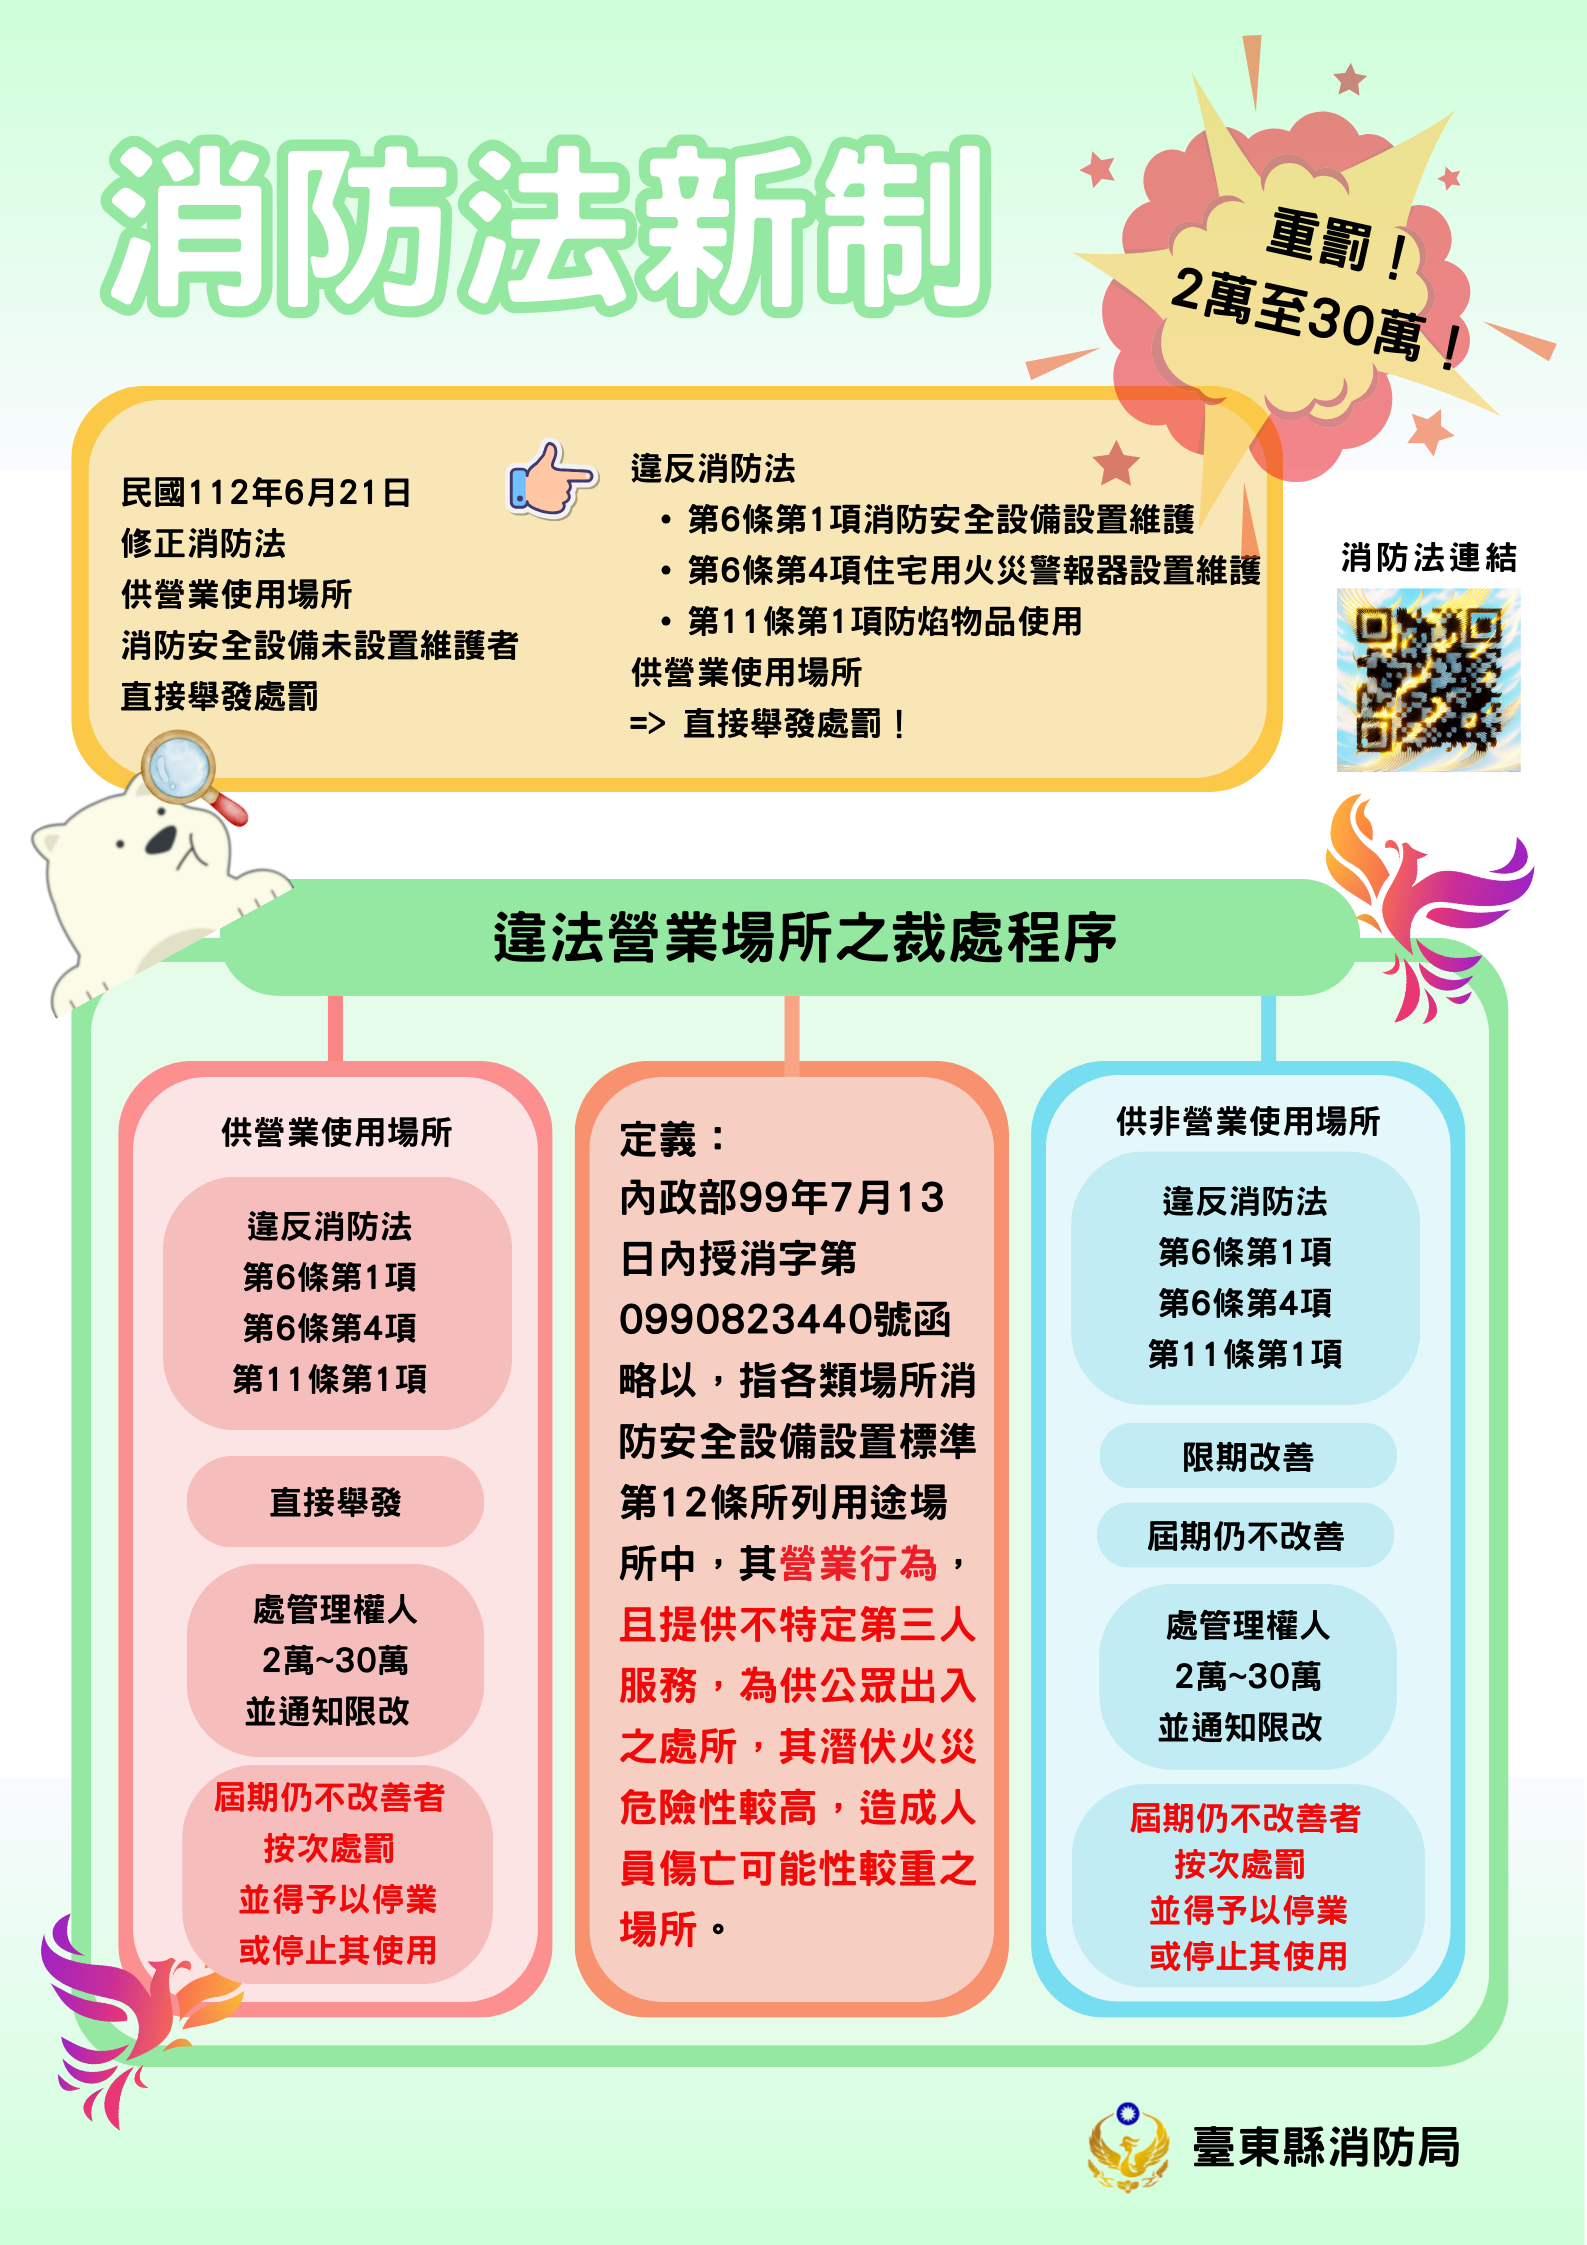 消防法業於112年6月21日以總統華總一義字第11200052791號令修正公布的封面圖片